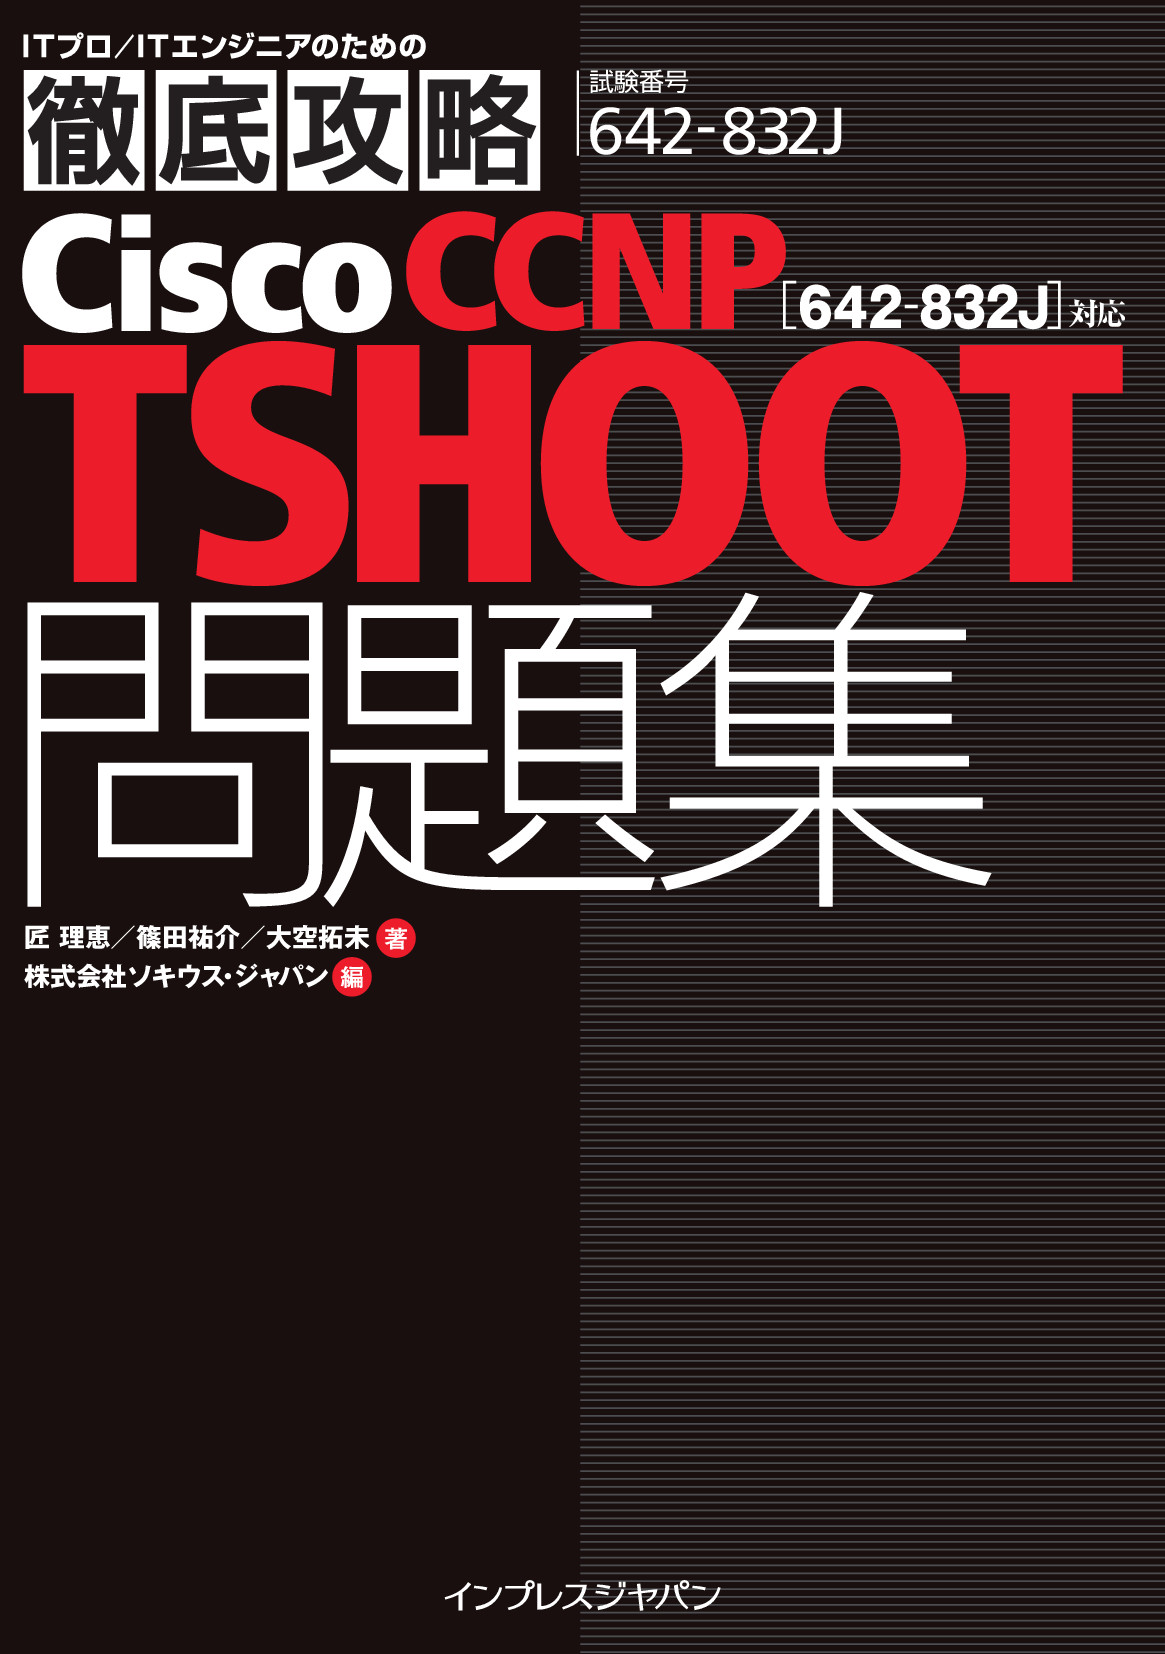 徹底攻略Cisco CCNP TSHOOT問題集［642-832J］対応【委託】 - 達人出版会